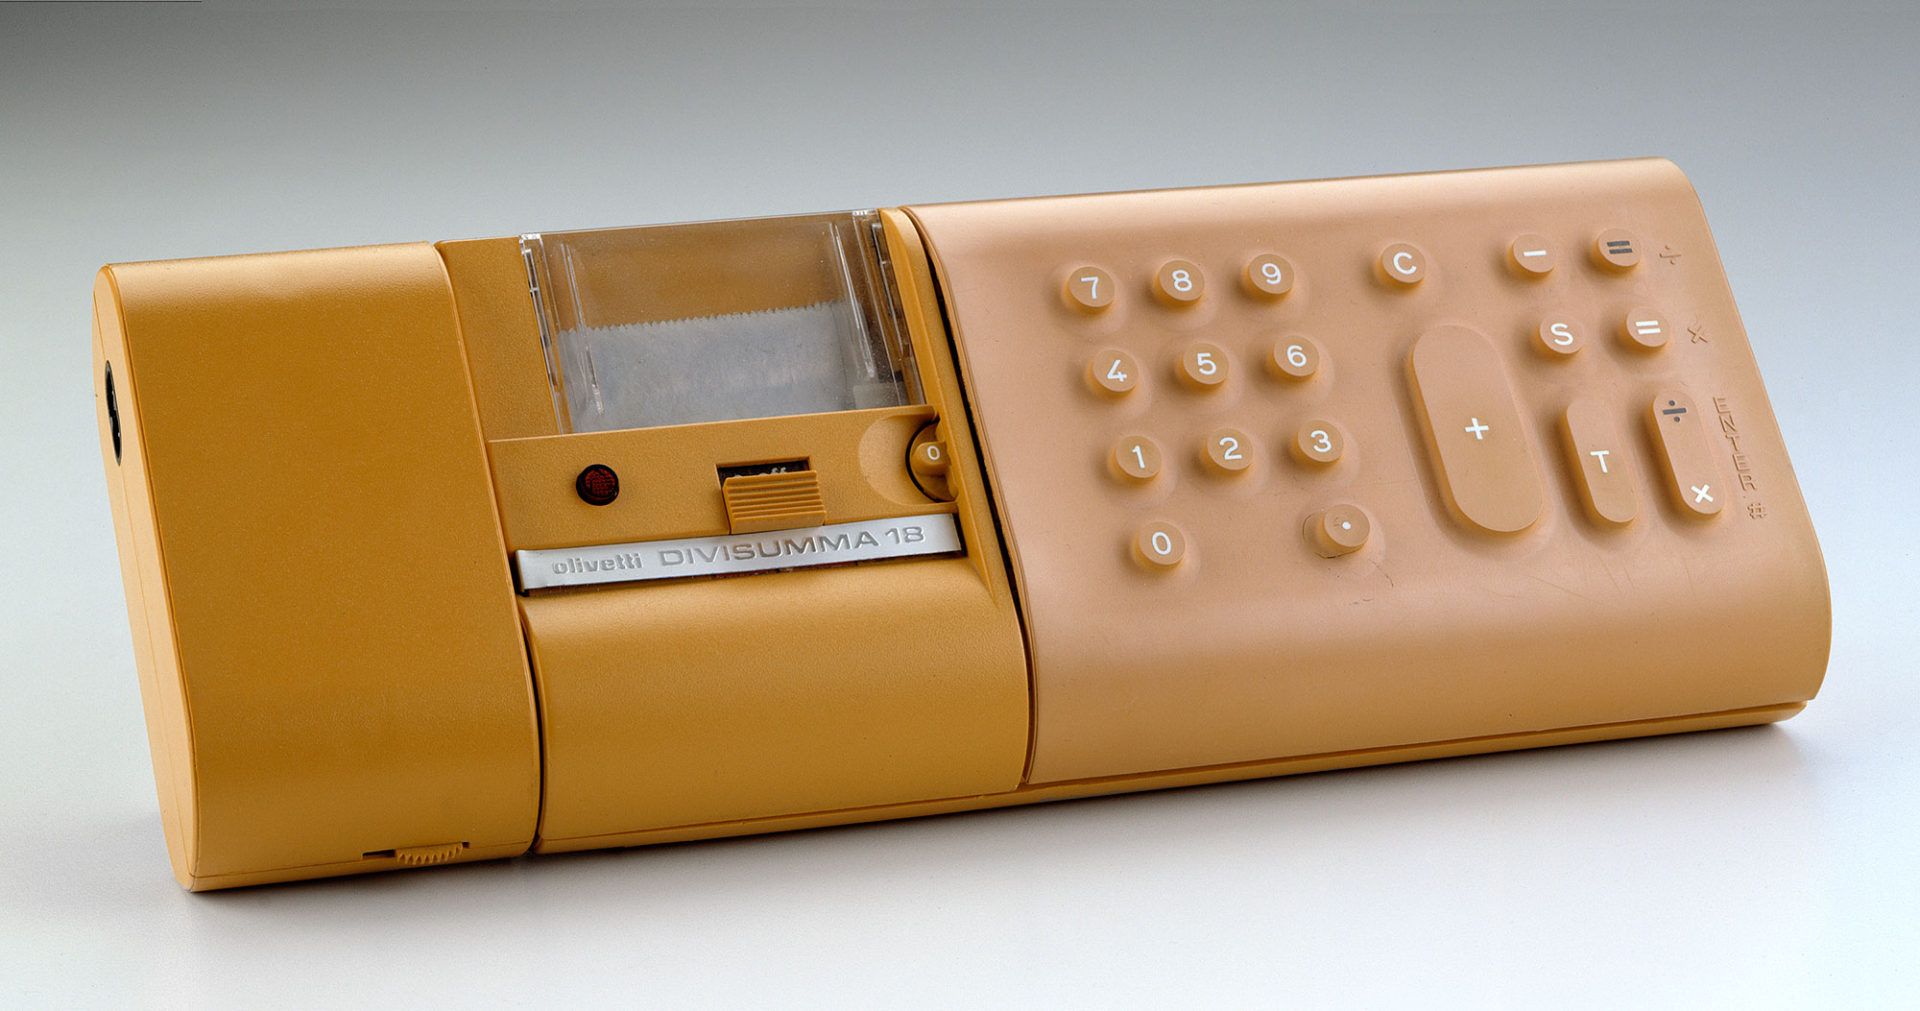 Calculatrice horizontale rectangulaire jaune aux coins arrondis, faite de plastique et de caoutchouc avec boutons sur la droite et imprimante au centre.